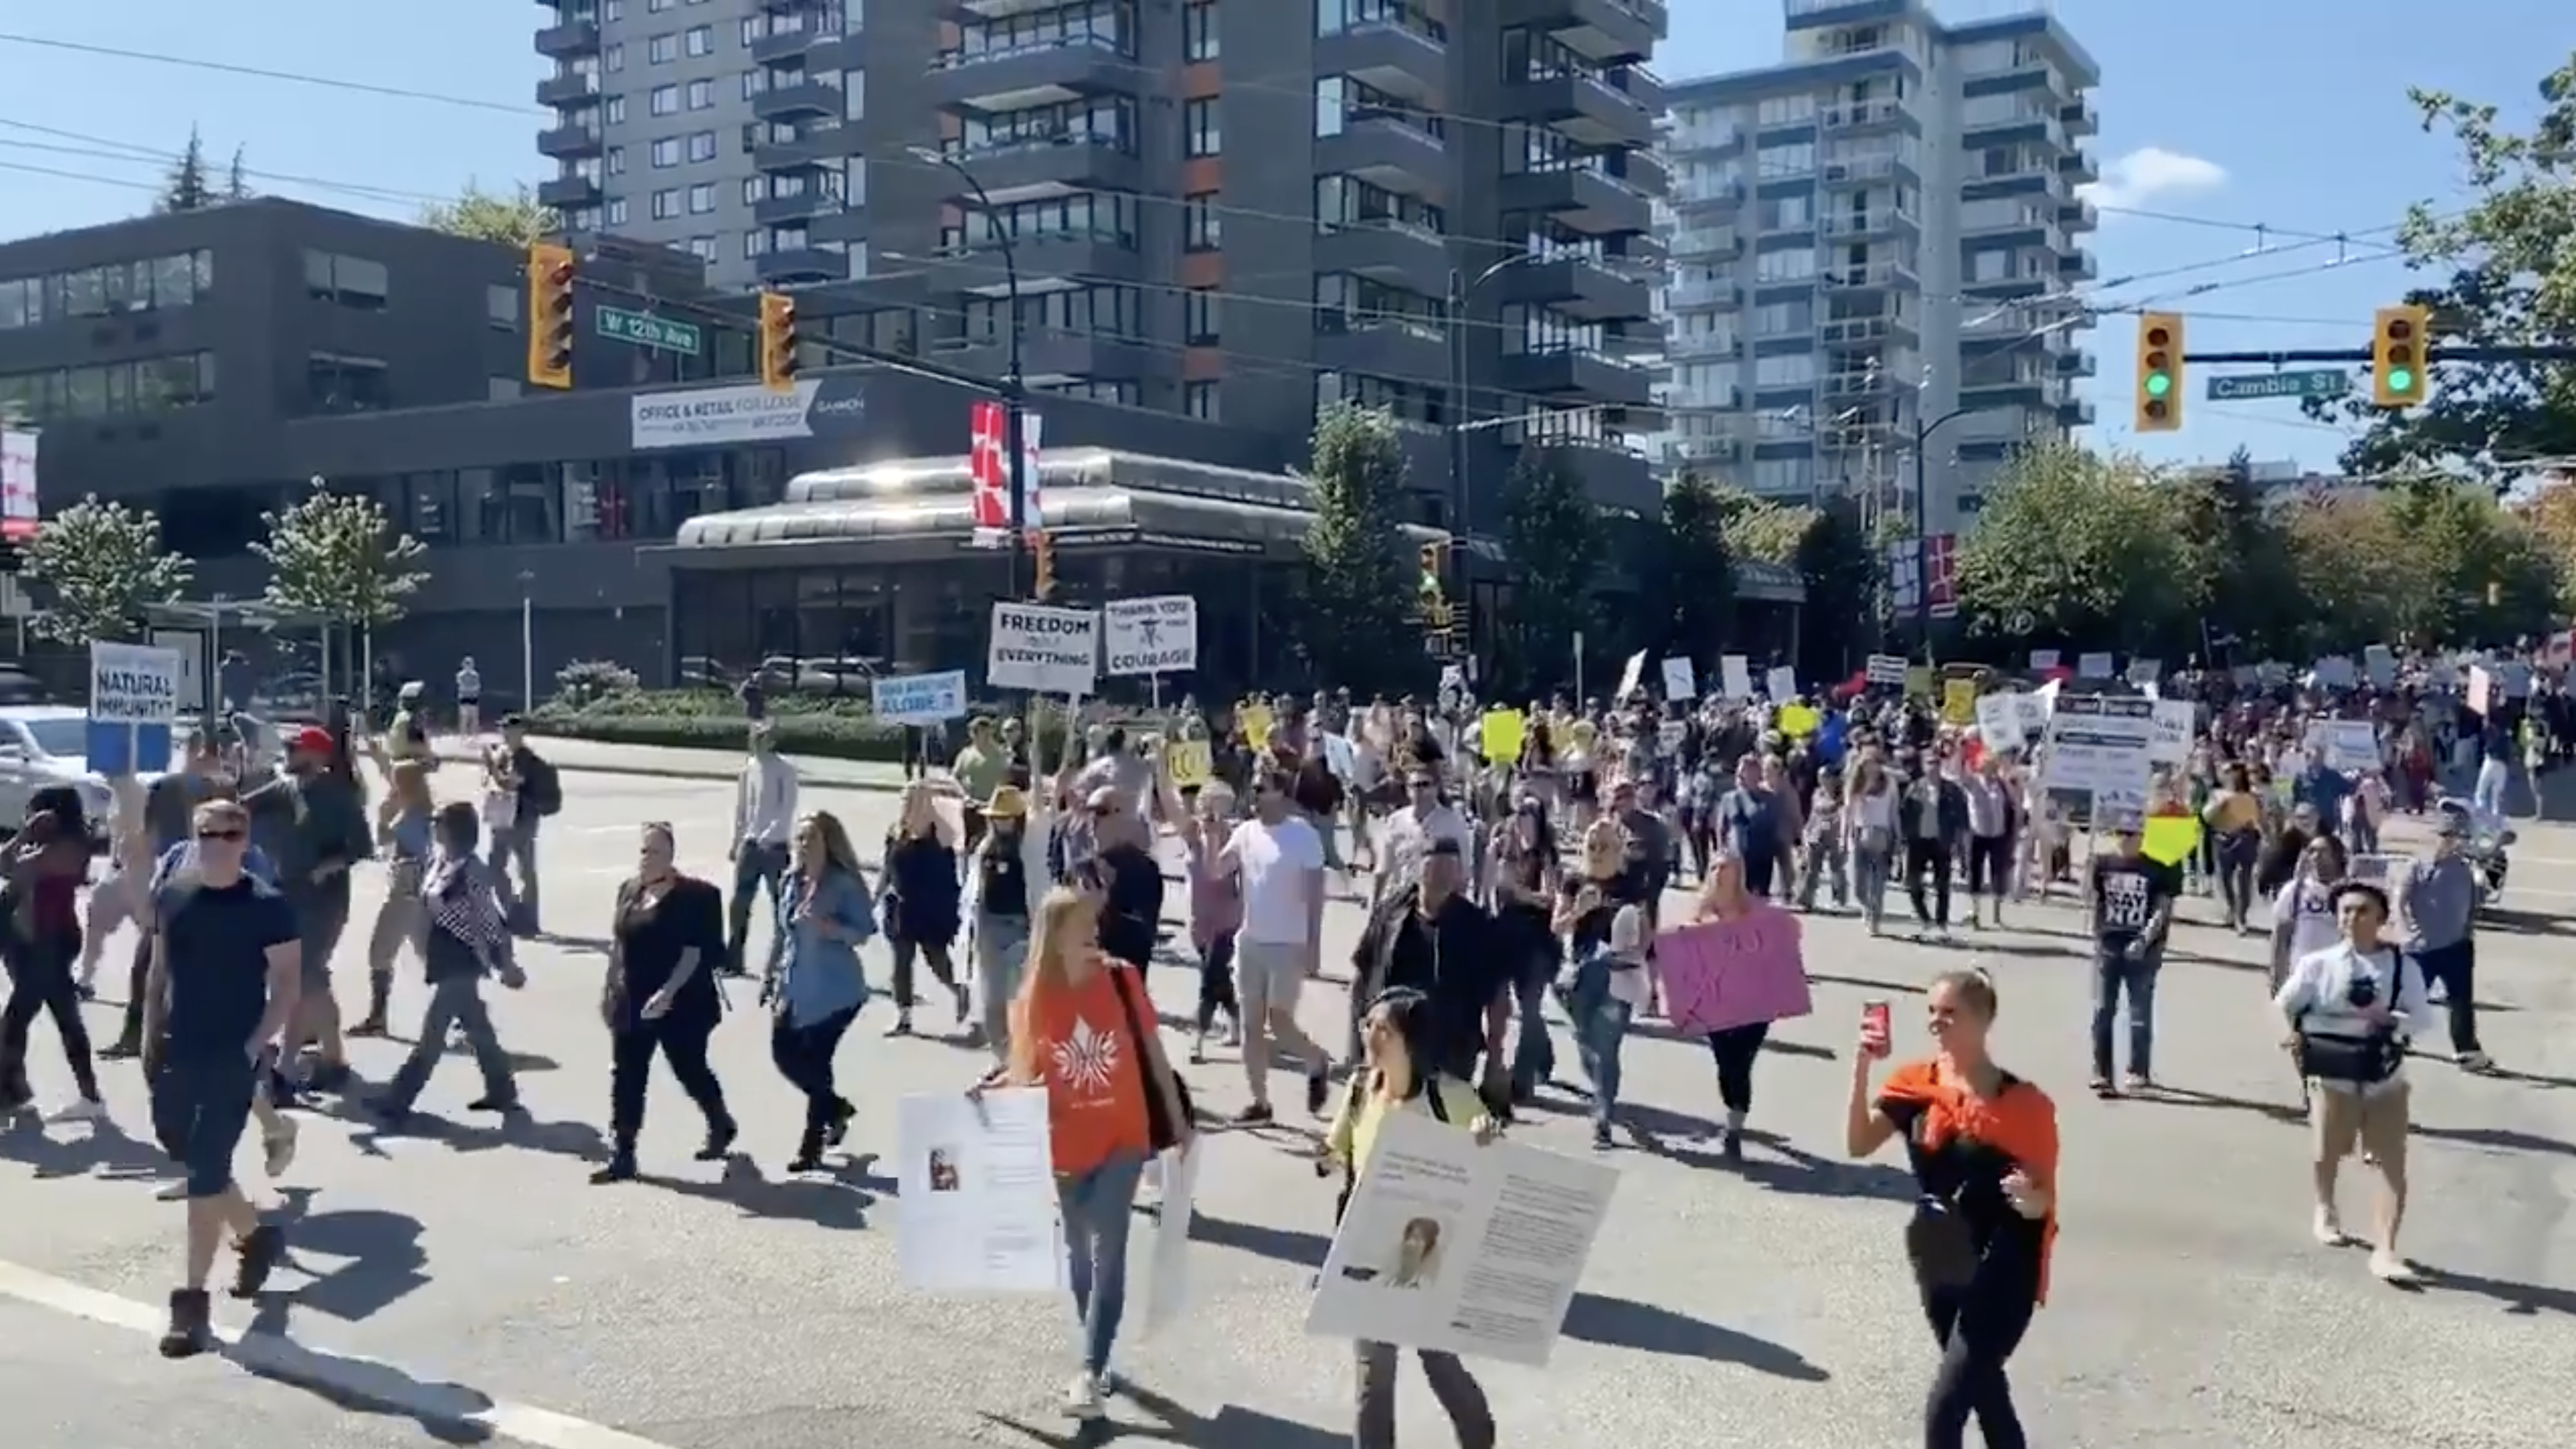 Anti-vaccine protestors disrupts traffic near Vancouver City Hall